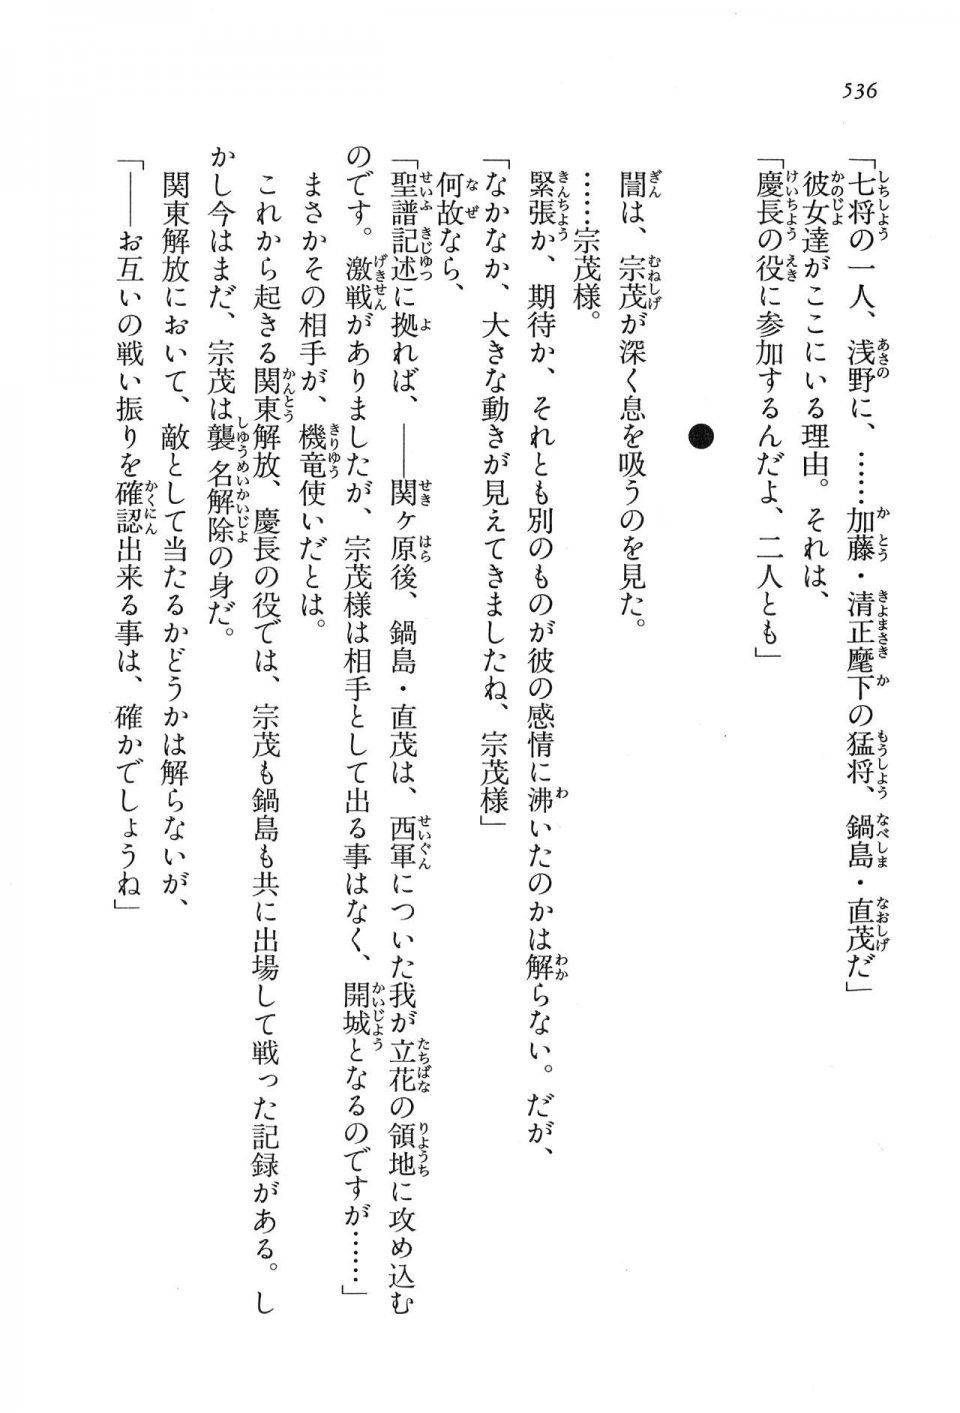 Kyoukai Senjou no Horizon LN Vol 16(7A) - Photo #536